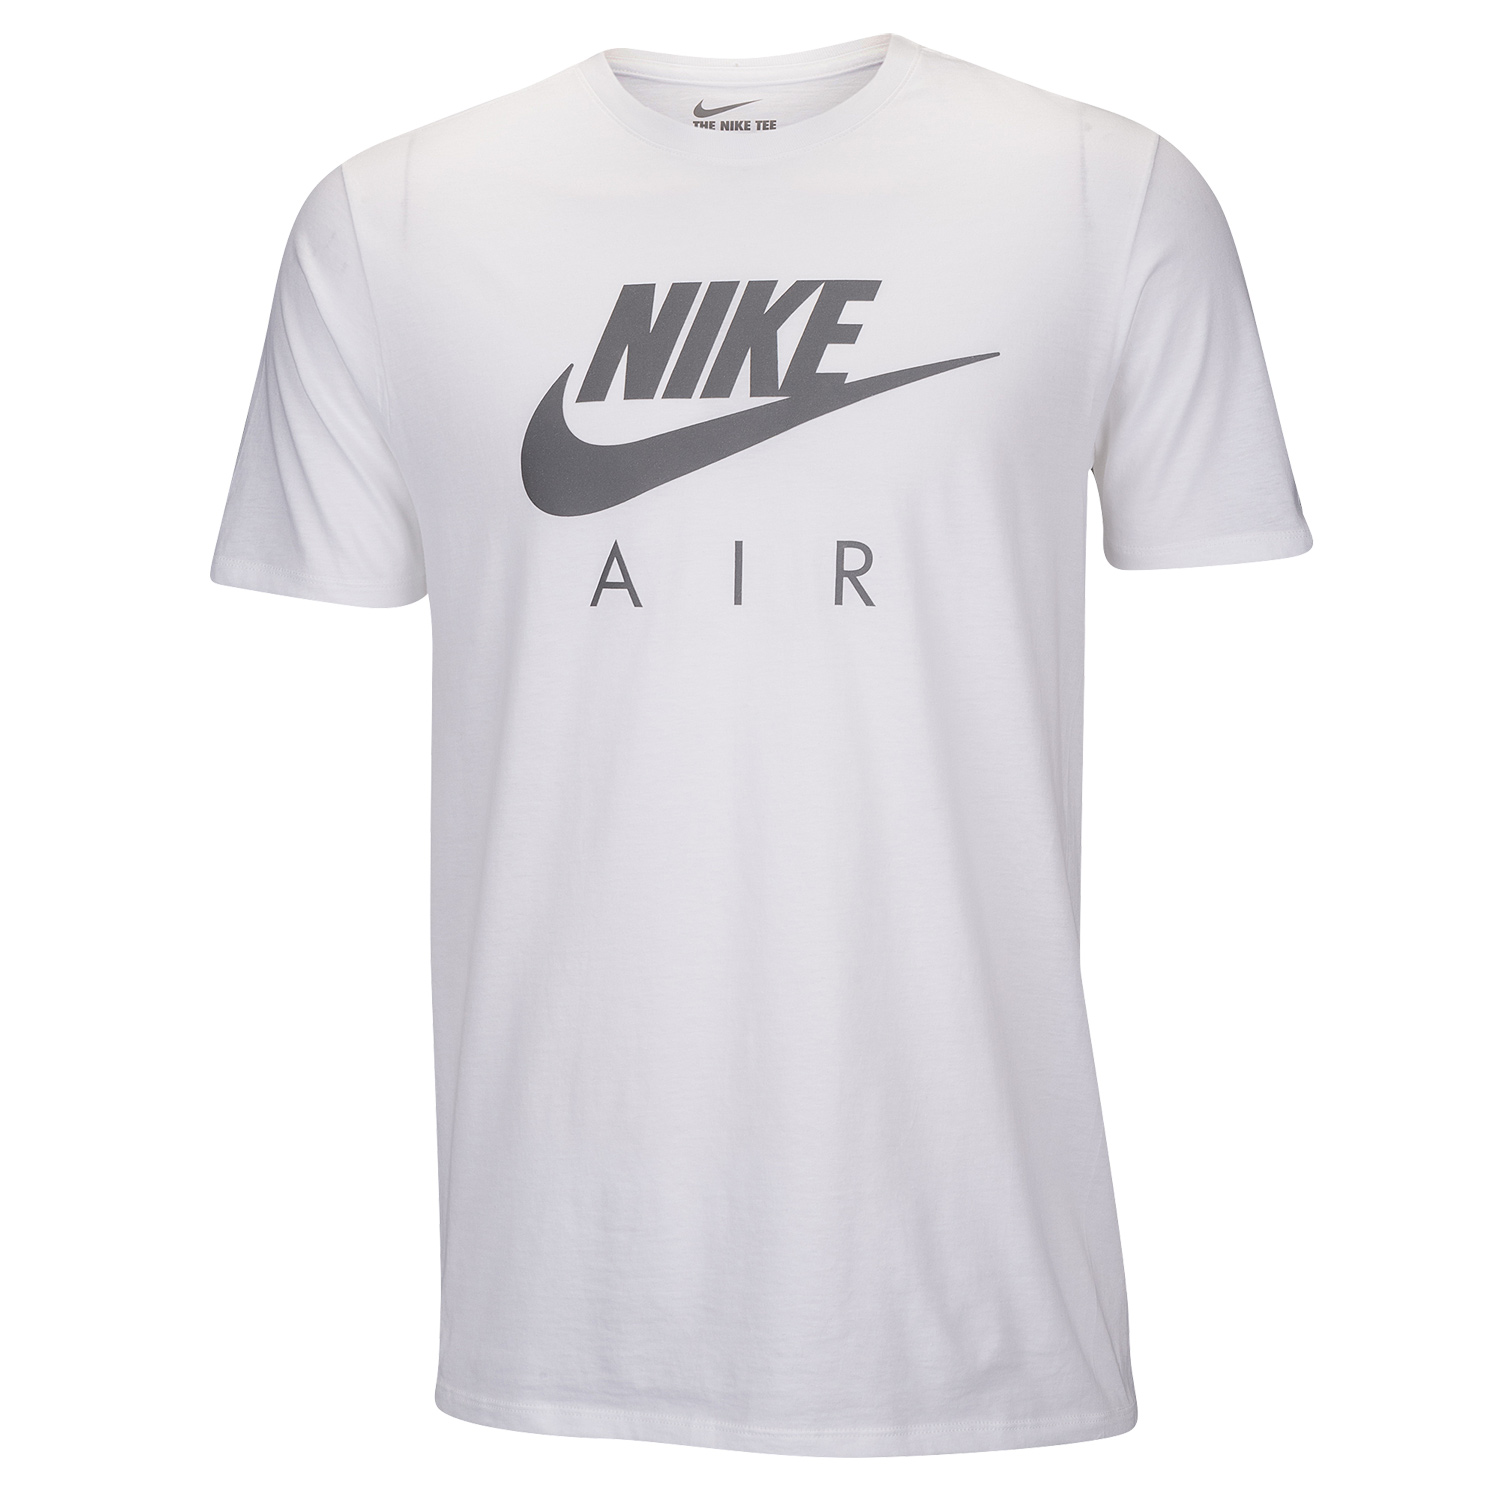 nike-air-tuned-max-smoke-grey-matching-shirt